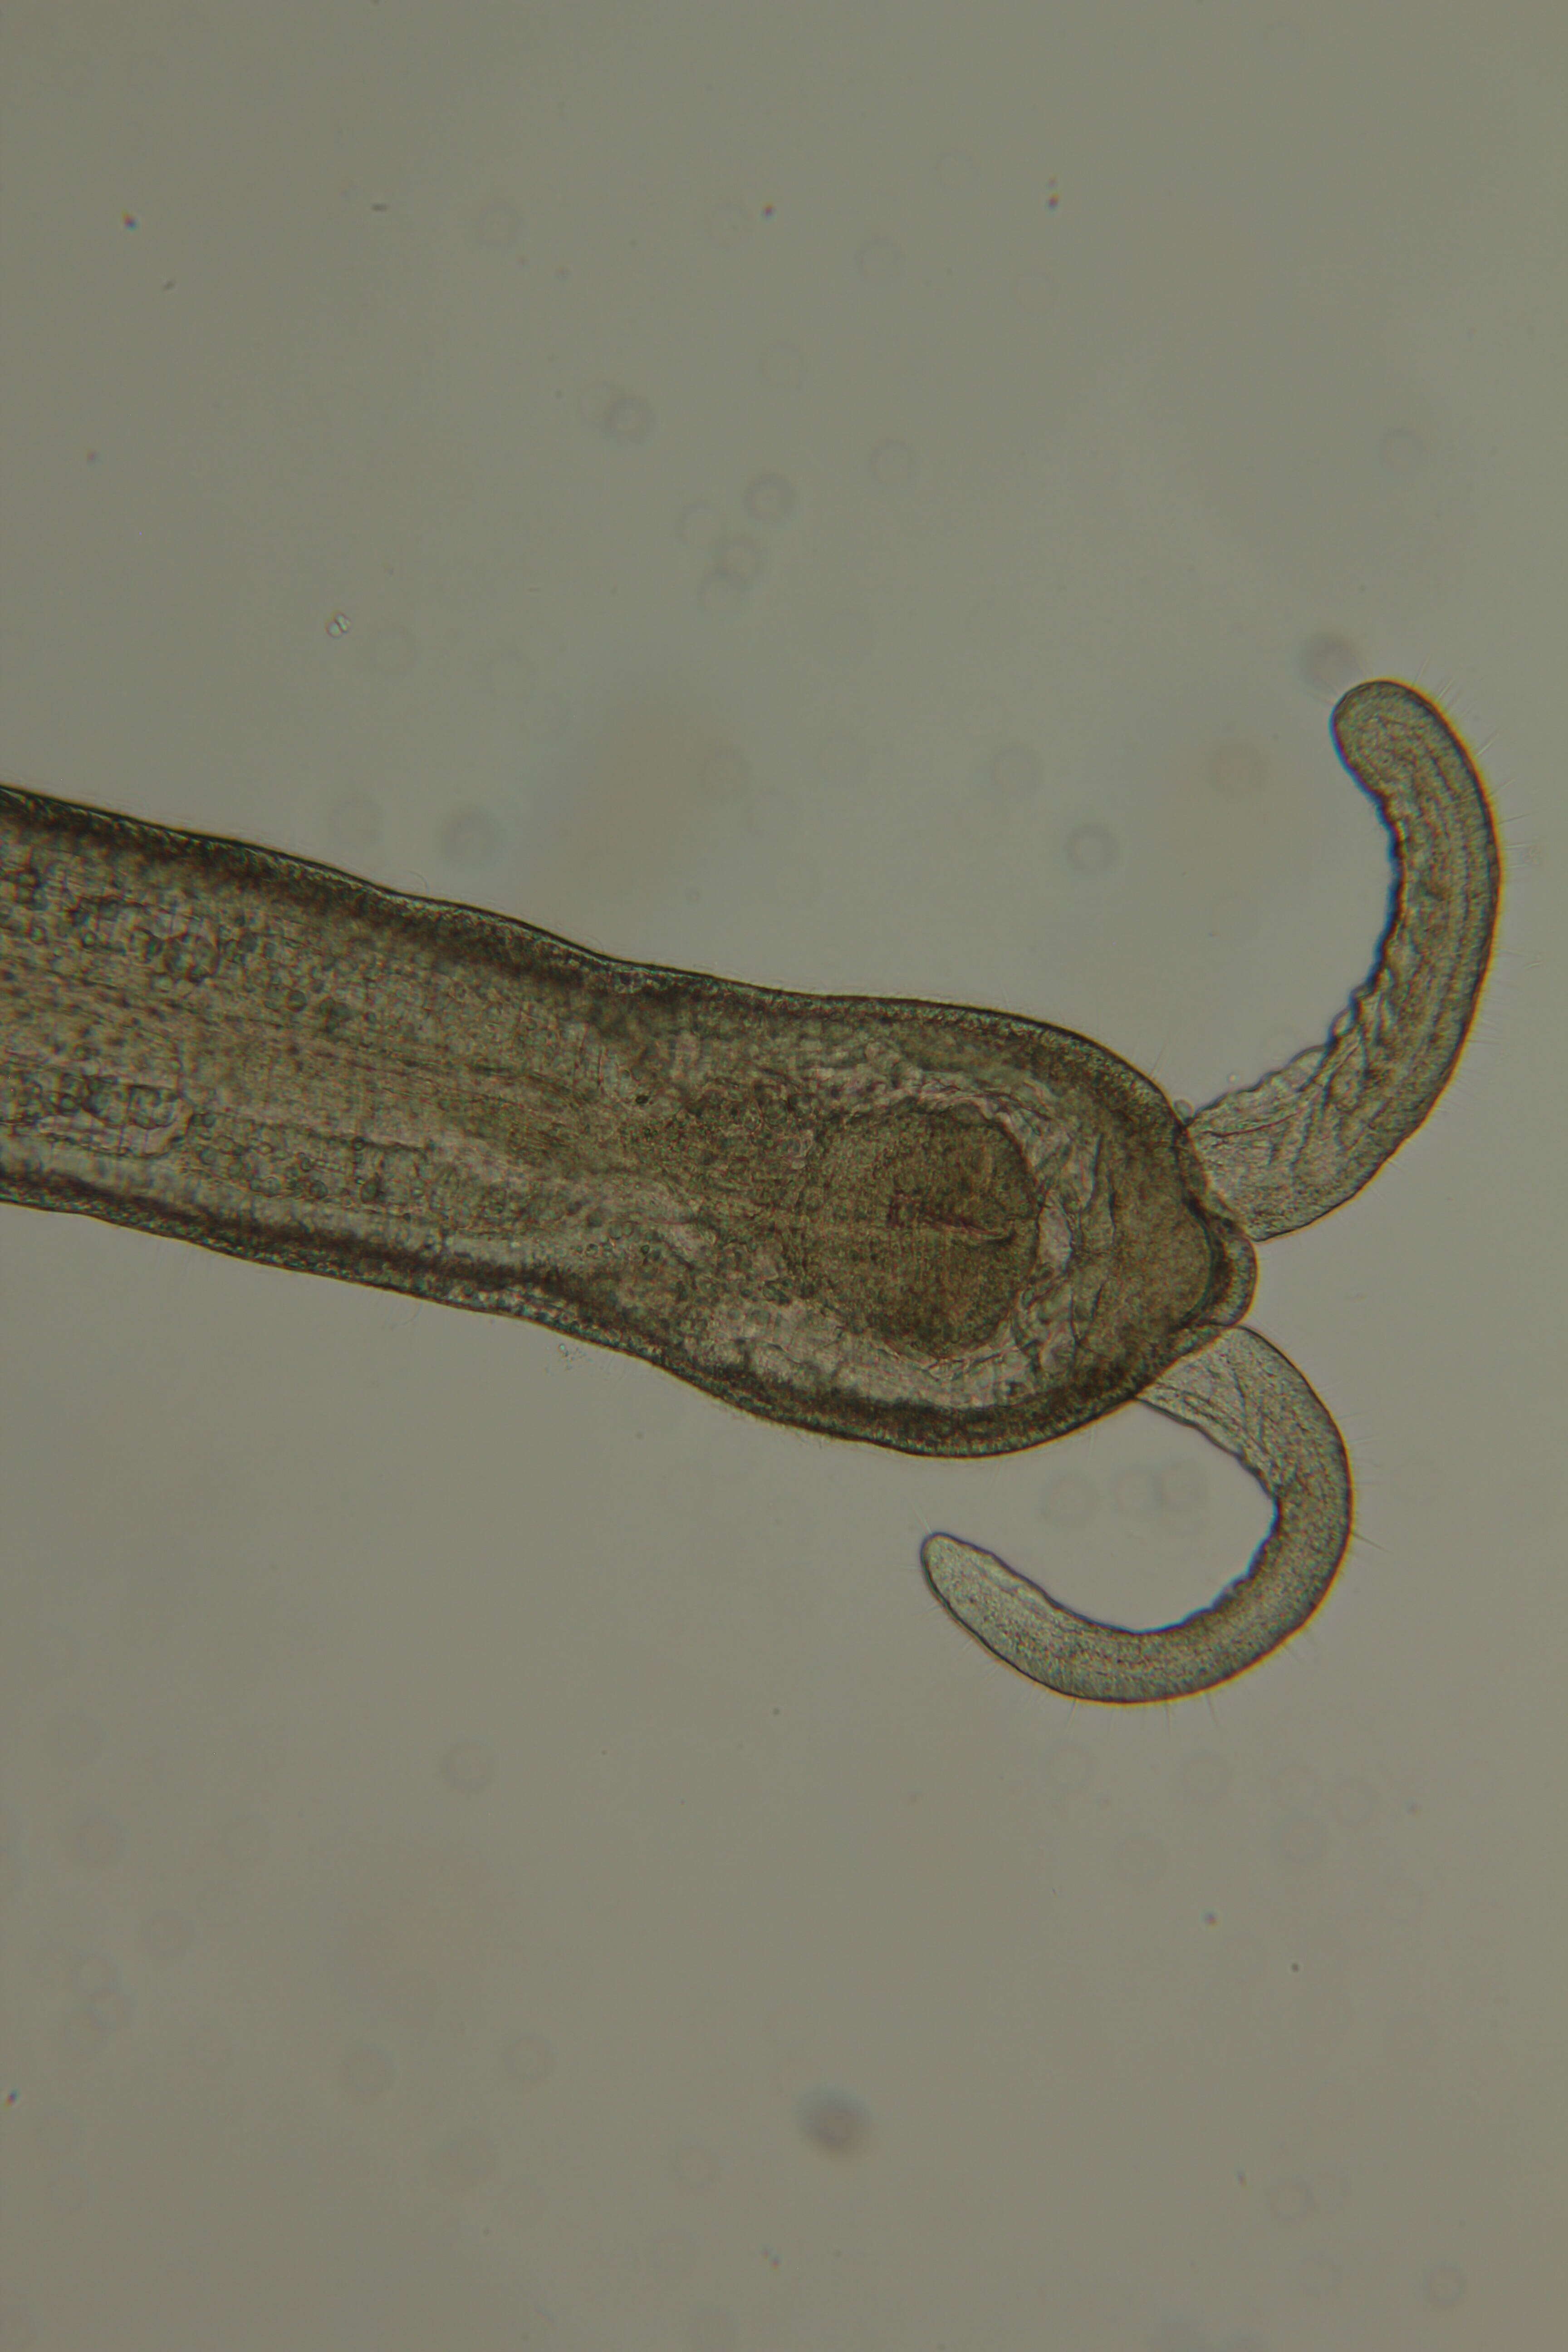 Image of Claudrilus ovarium (Di Domenico, Martínez, Lana & Worsaae 2013)